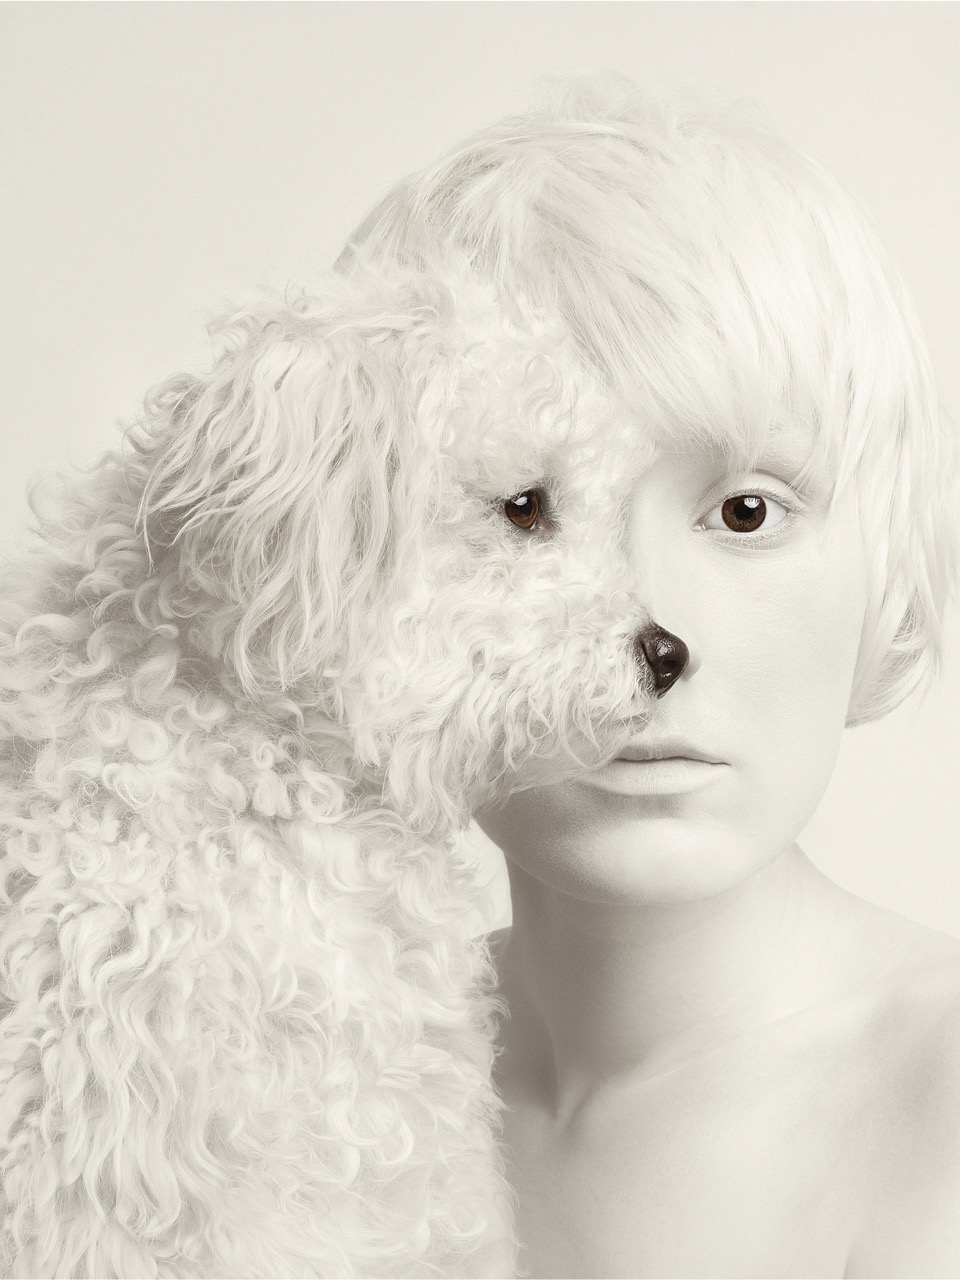 Tecco PM230 Fotopapier  Produktfoto, Eine Frau und ein Hund der die Hälfte ihres GEsichtes verdeckt in Schwarz weiss mit Sepia Stich